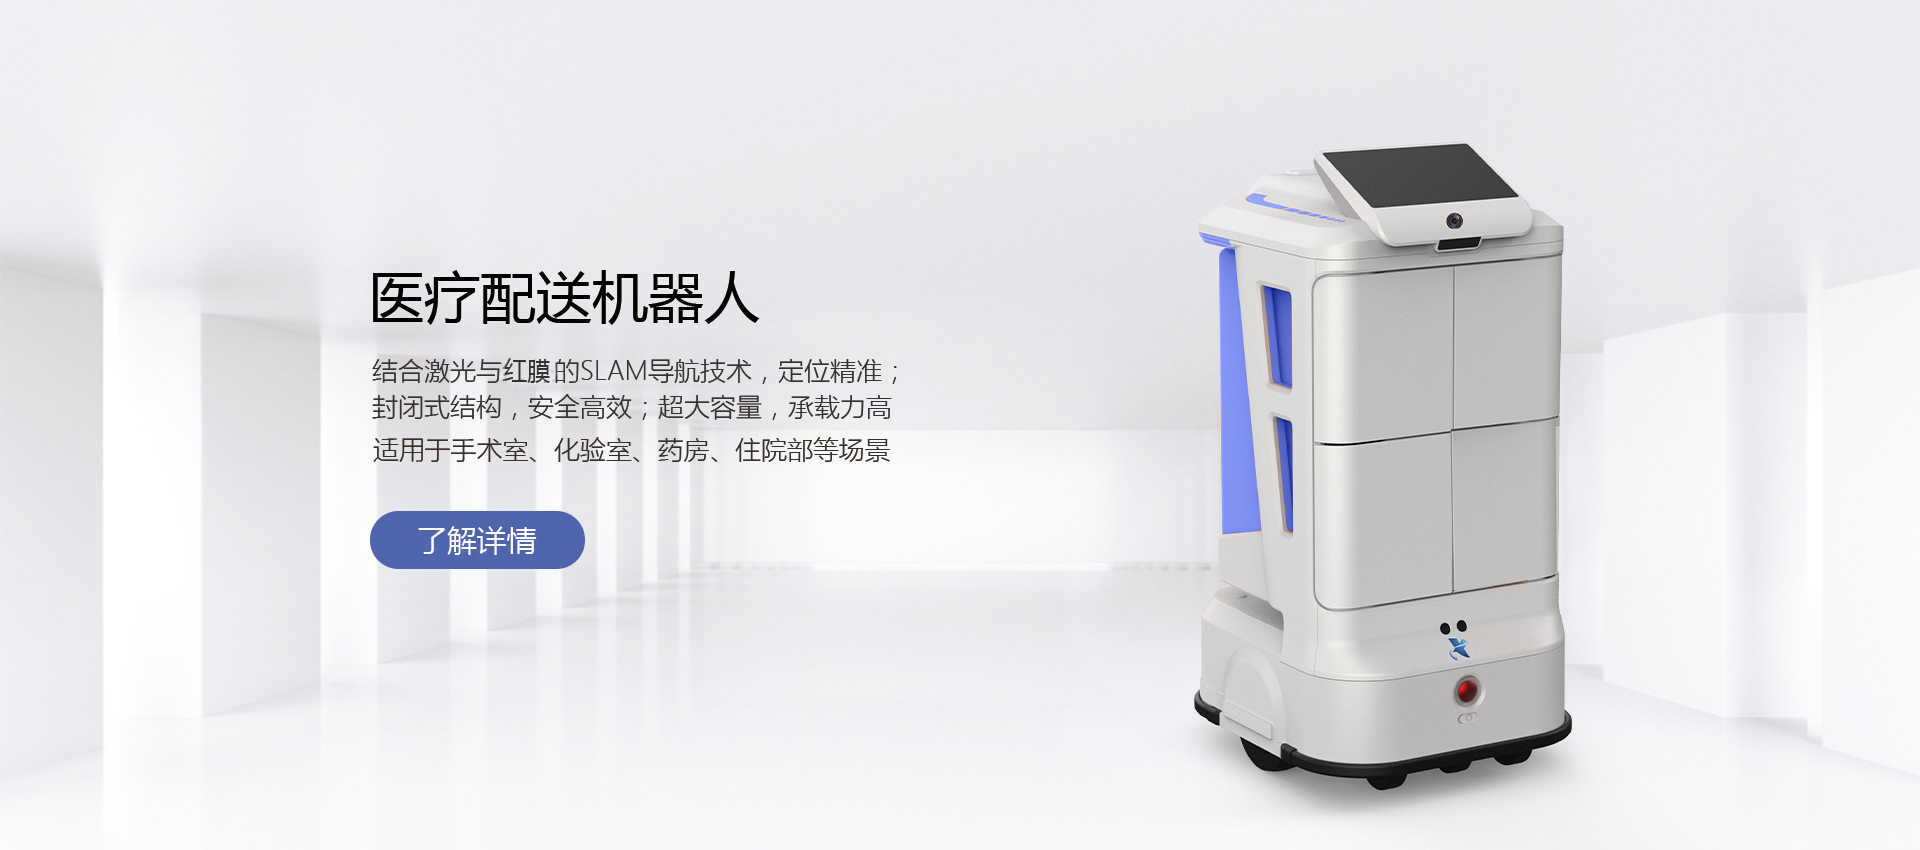 新正源小灵配送机器人使用医院各科室手术室等配送物品